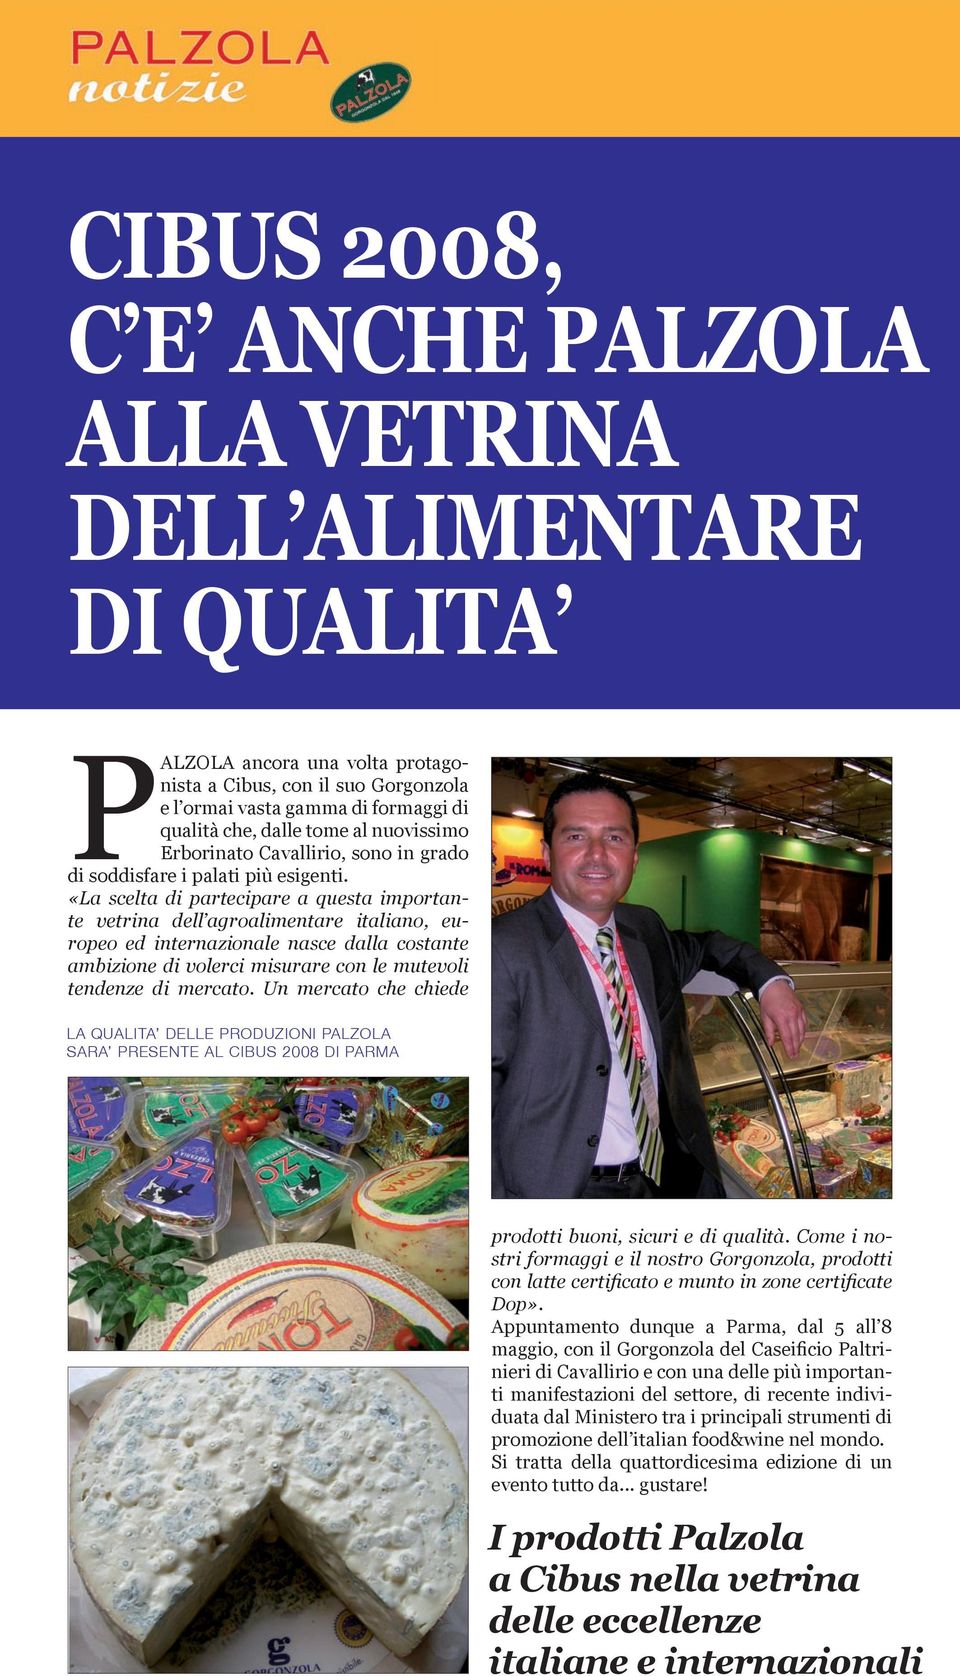 «La scelta di partecipare a questa importante vetrina dell agroalimentare italiano, europeo ed internazionale nasce dalla costante ambizione di volerci misurare con le mutevoli tendenze di mercato.